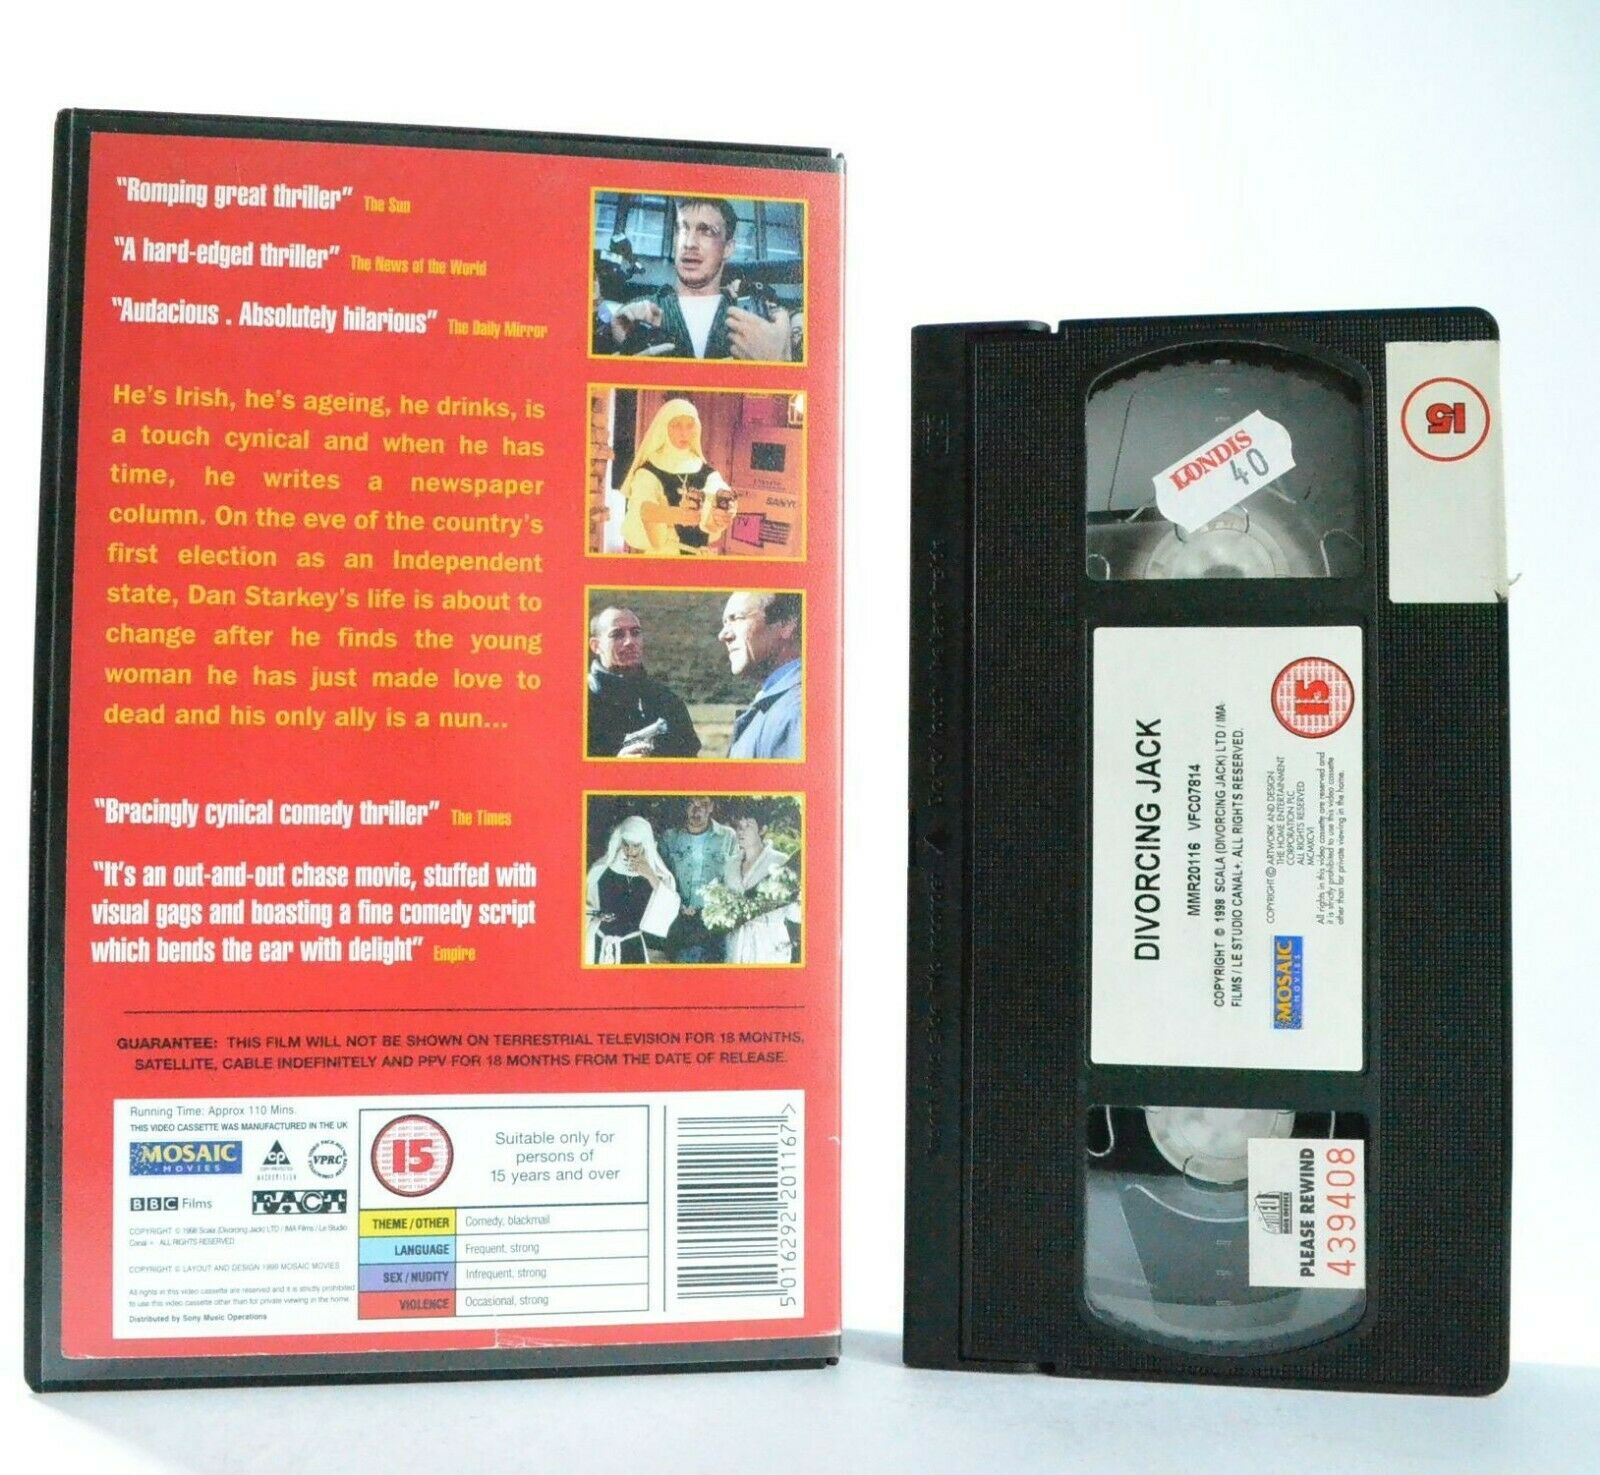 Divorcing Jack: British Comedy Thriller (1998) - Large Box - Ex-Rental - Pal VHS-